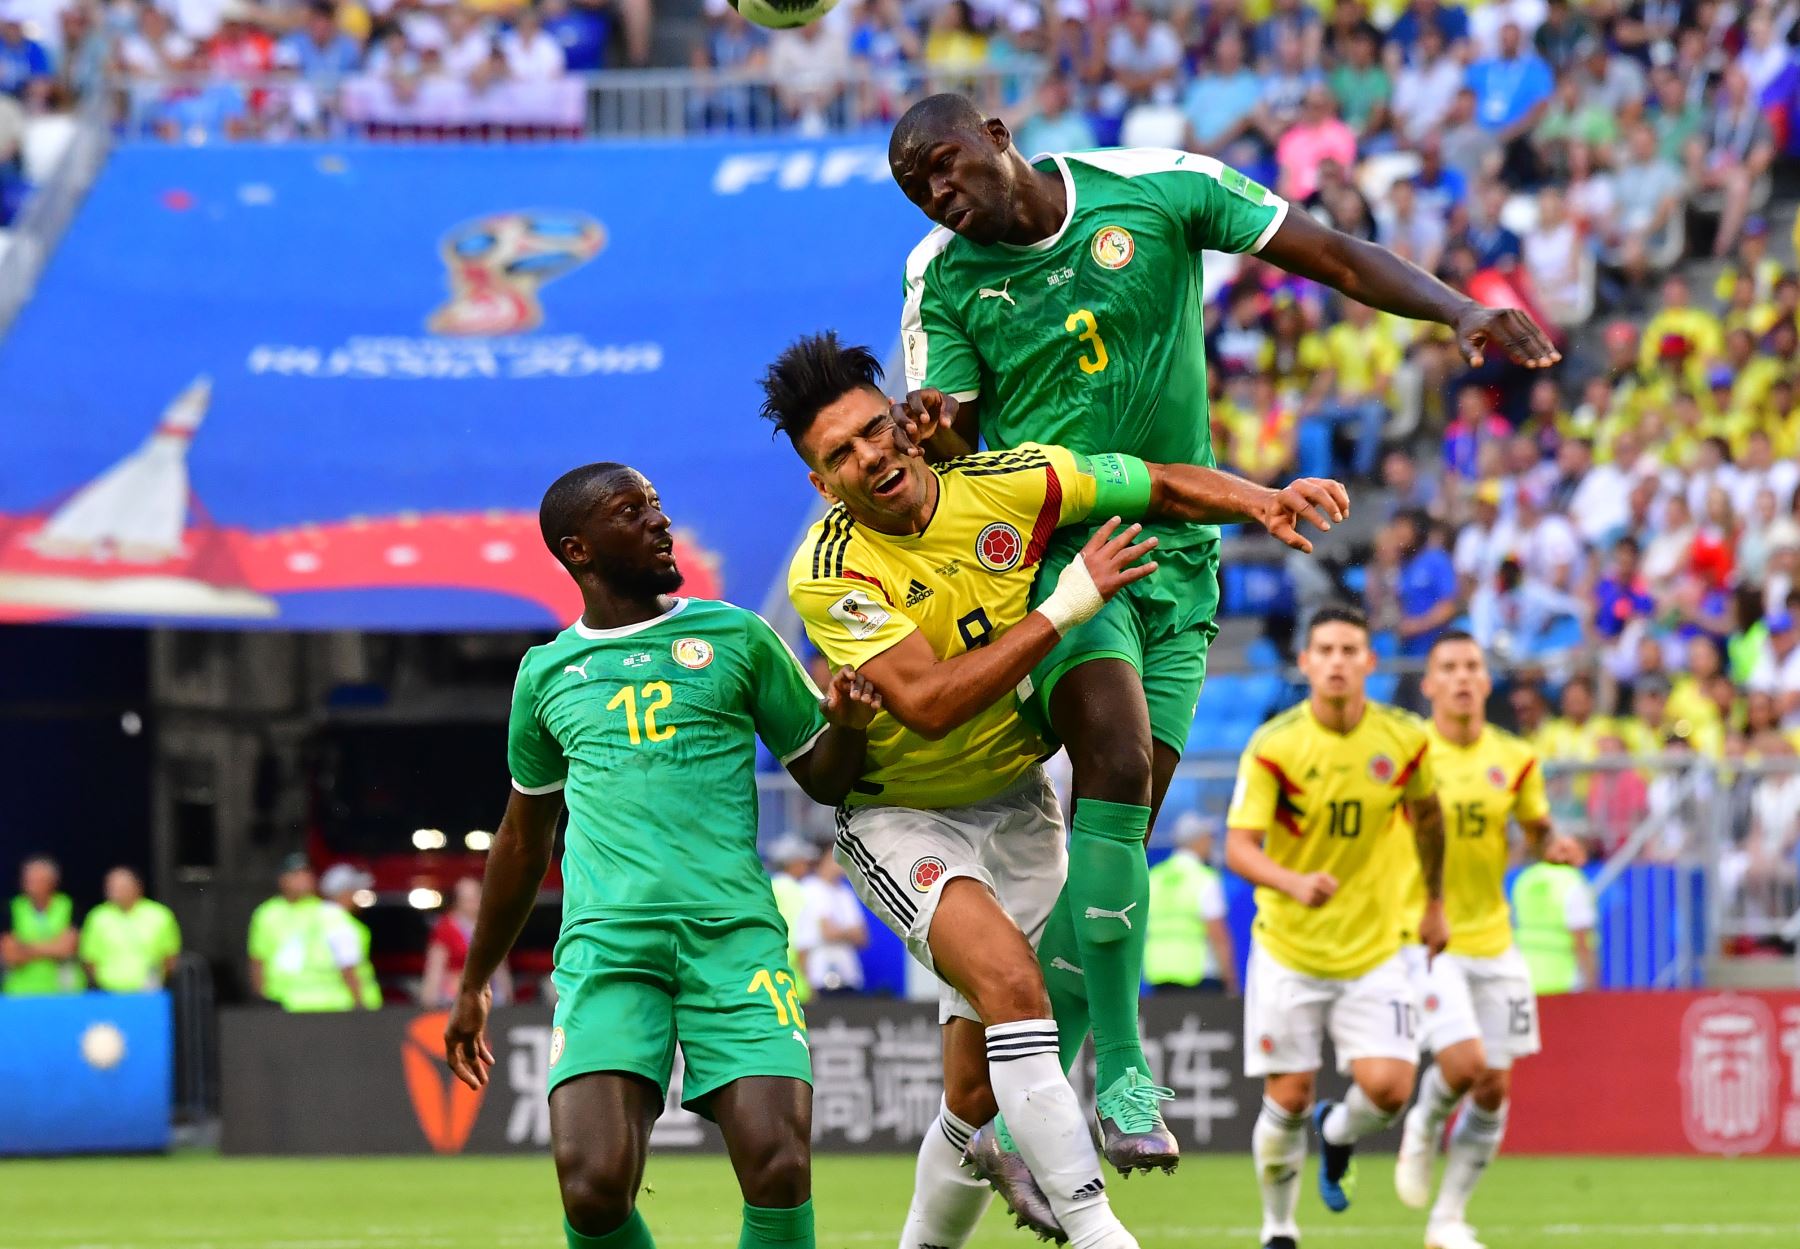 El alero colombiano Falcao (C) salta para encabezar el balón con el defensor senegalés Youssouf Sabaly (L) y el defensa senegalés Kalidou Koulibaly durante el partido de fútbol Rusia 2018 Grupo H entre Senegal y Colombia en el Samara Arena en Samara el 28 de junio de 2018. / AFP